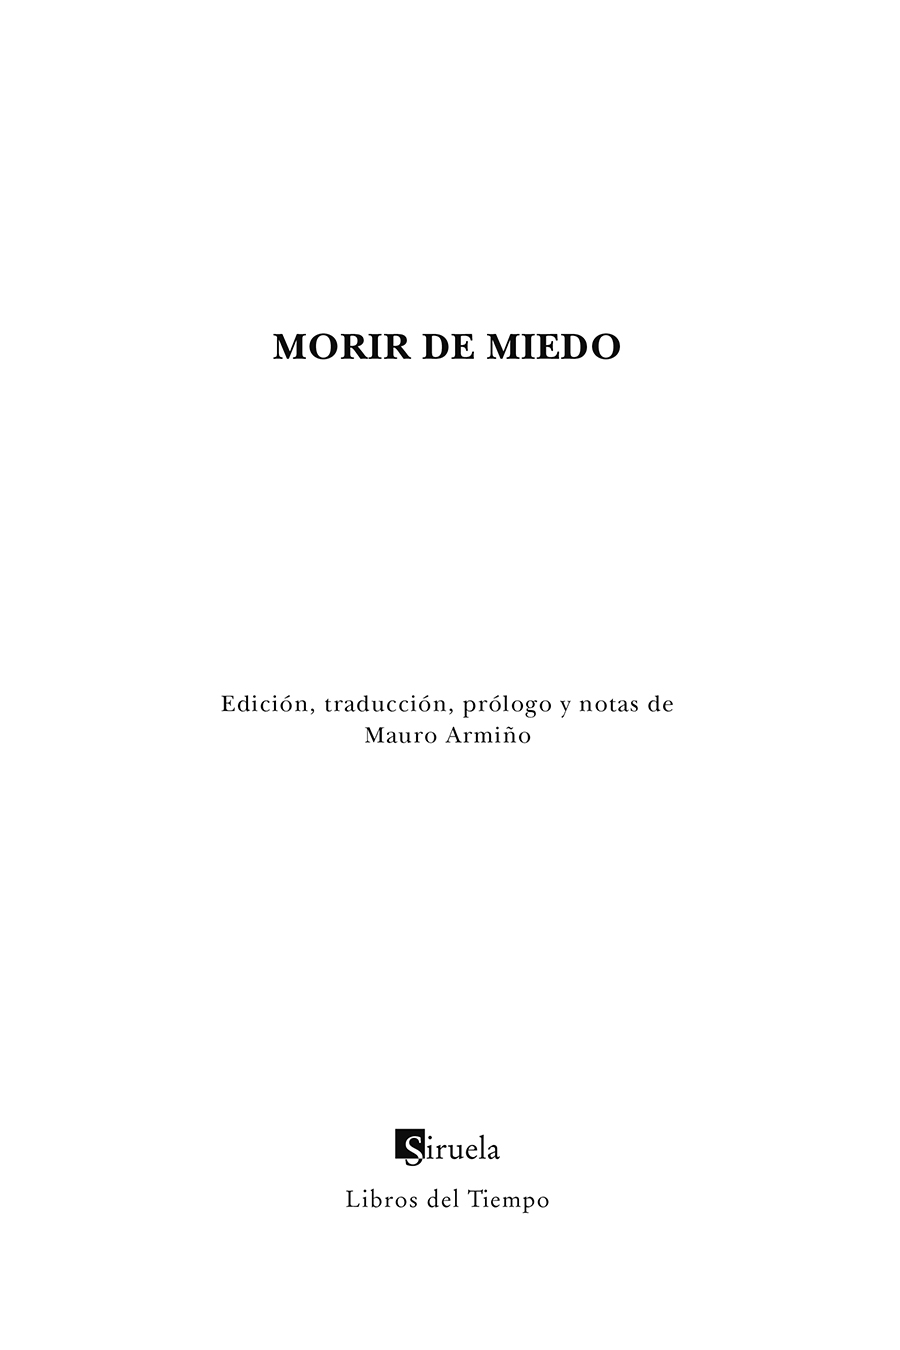 Portadilla: Morir de miedo. Mauro Armiño (Ed.)